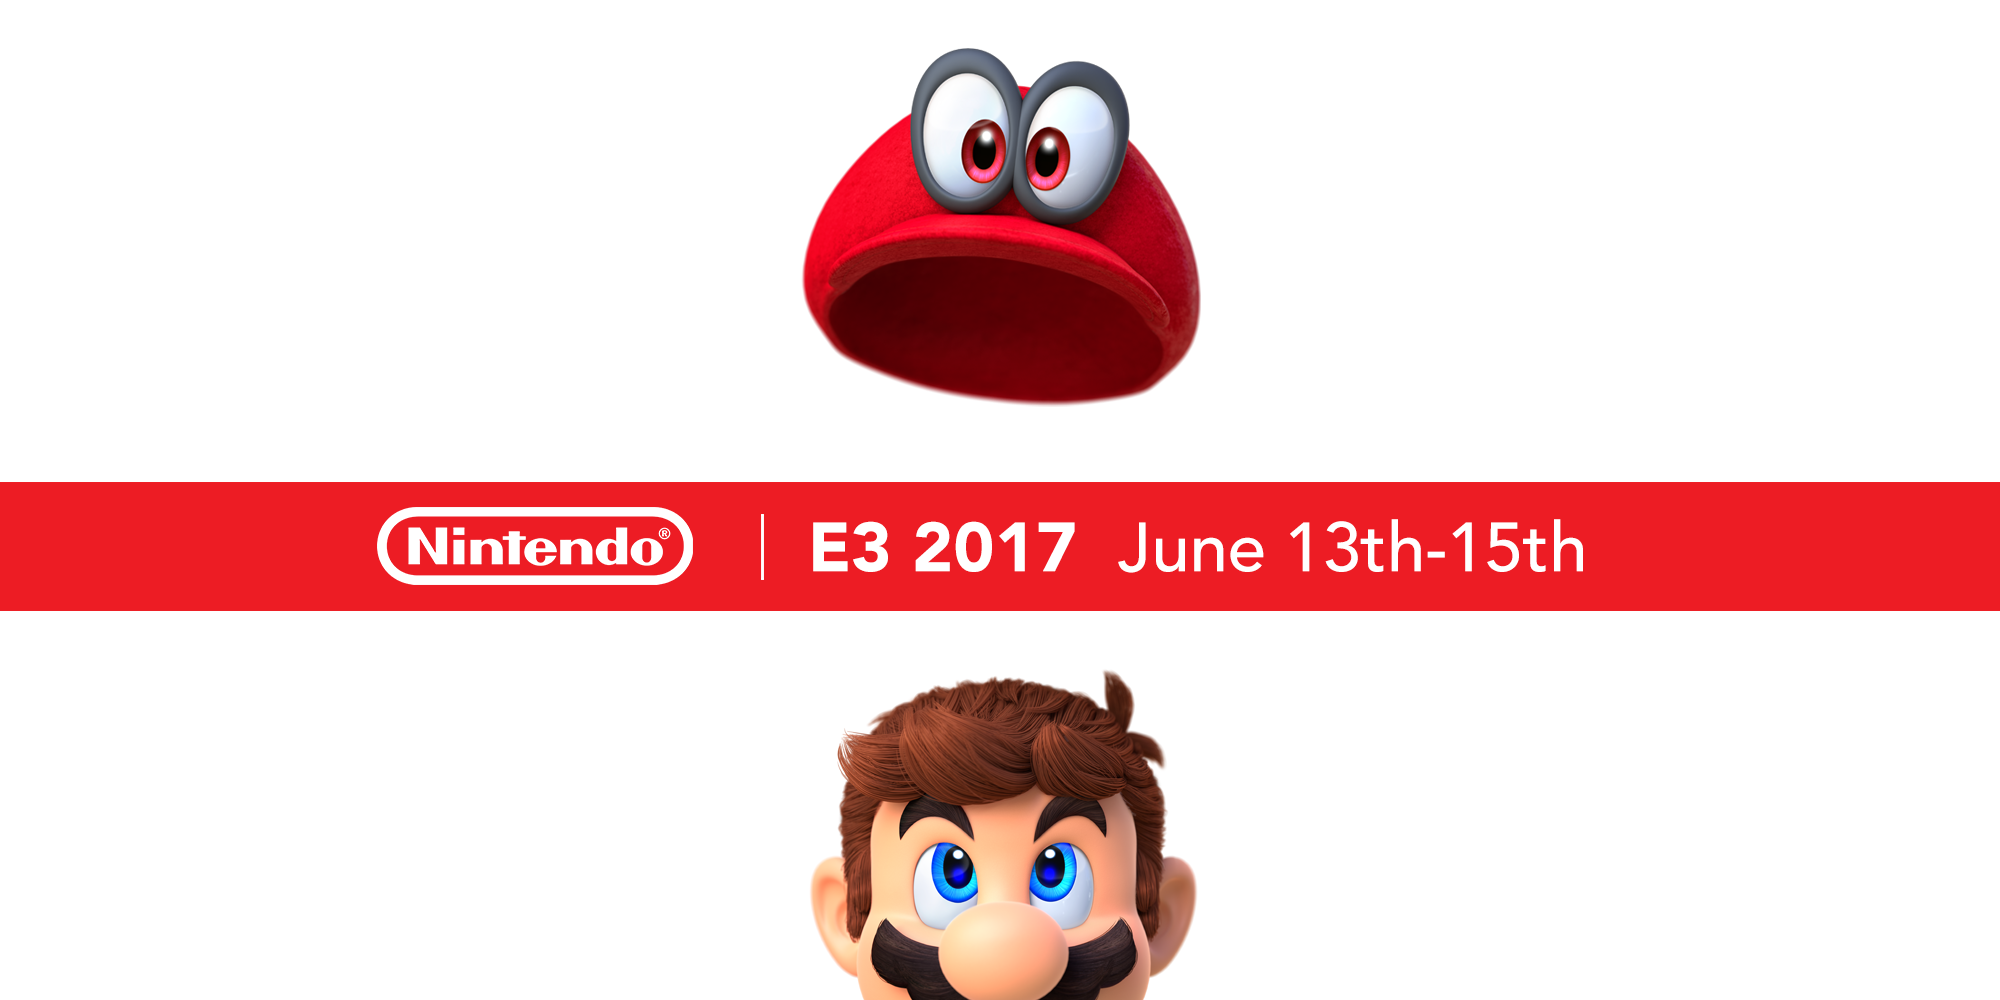 Nintendo adds Pokkén Tournament DX to the E3 line-up